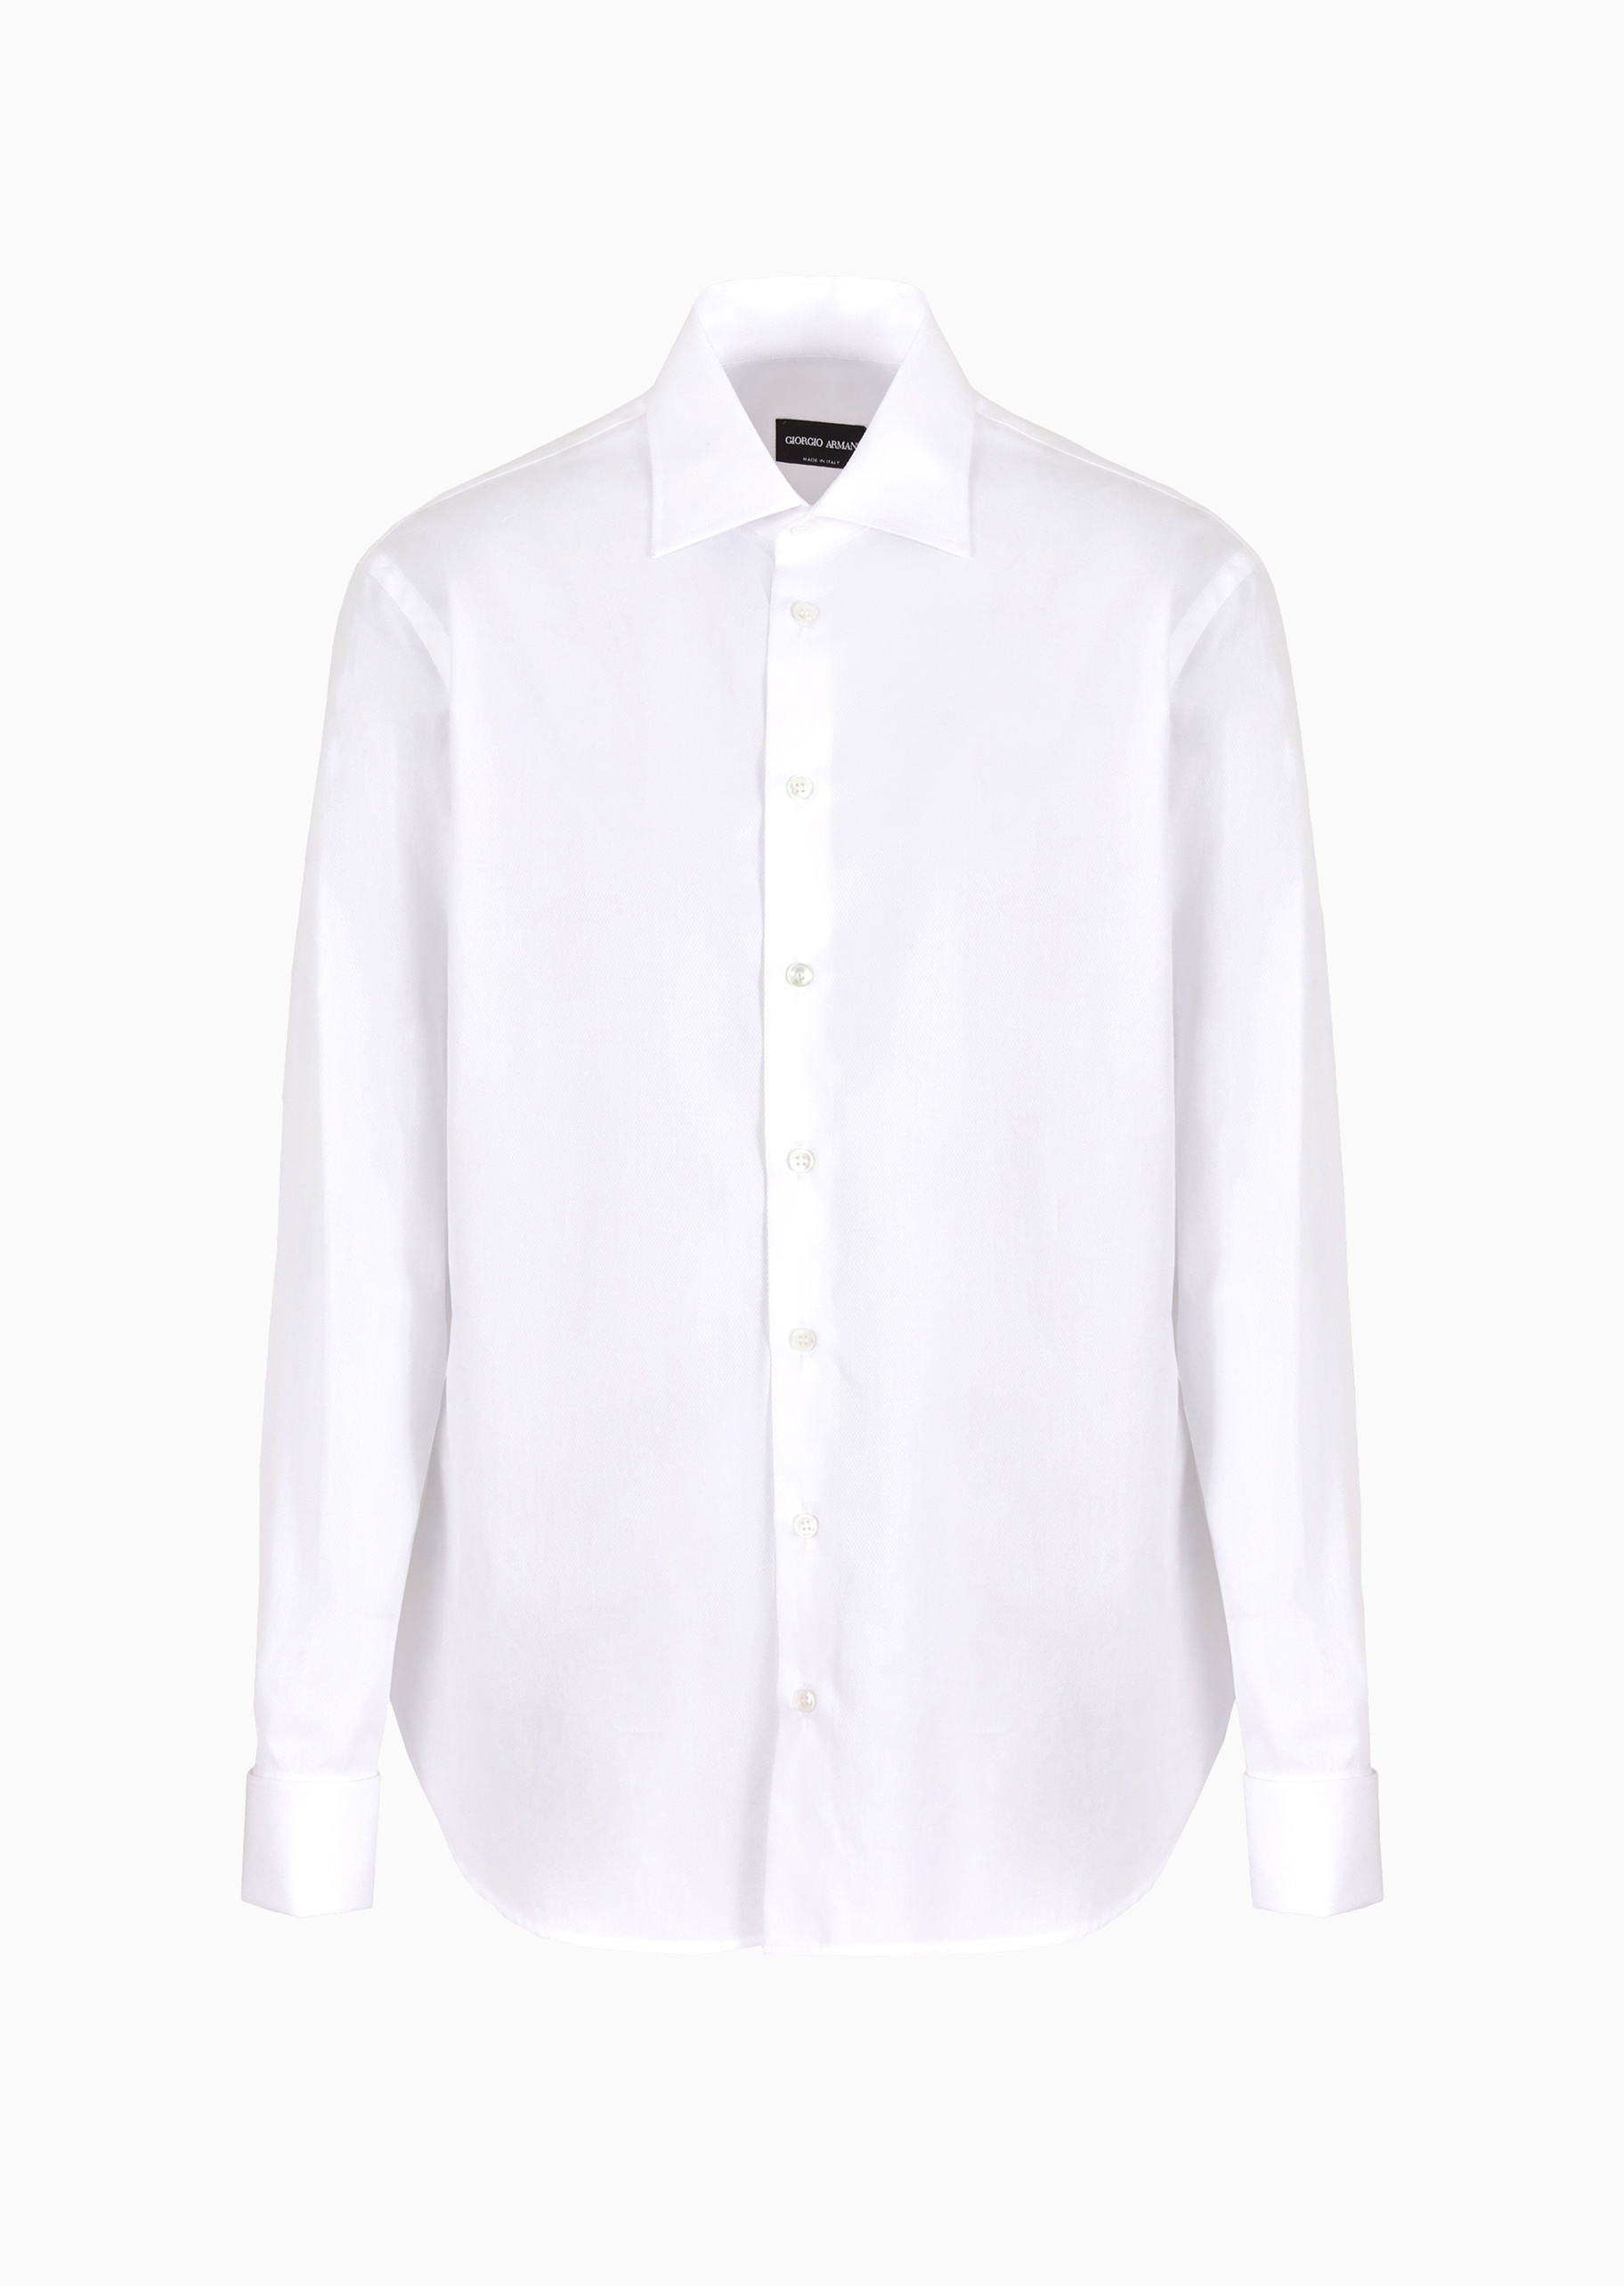 Giorgio Armani 男士全棉修身长袖翻领优雅纯色衬衫